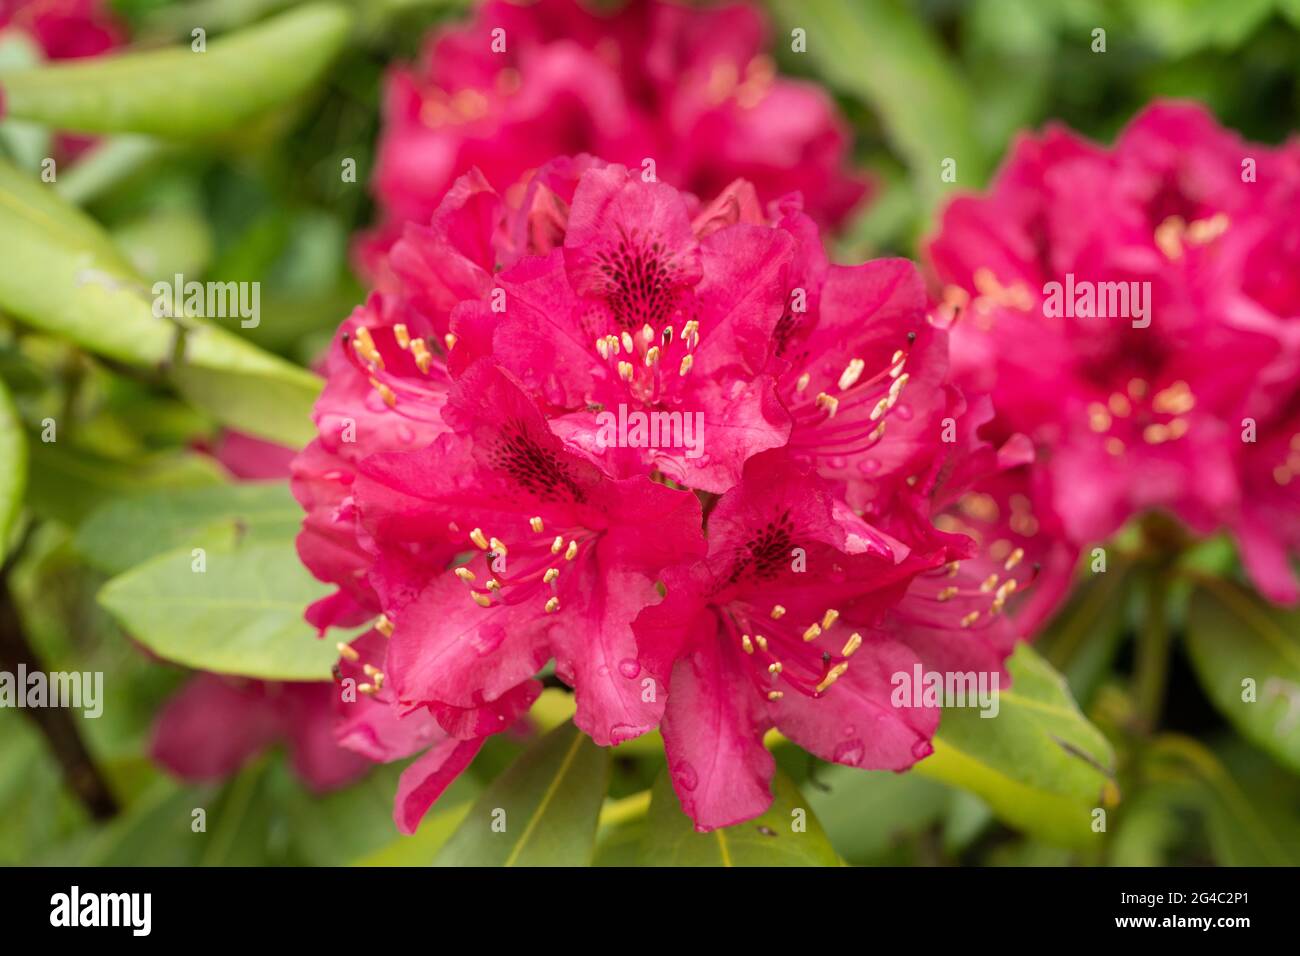 Rhododendron ‘Marie forte’ fleurit avec des gouttes de pluie. Grappes de fleurs rouges en forme d'entonnoir, rouge foncé, avec des marques sombres sur la gorge de chaque fleur Banque D'Images